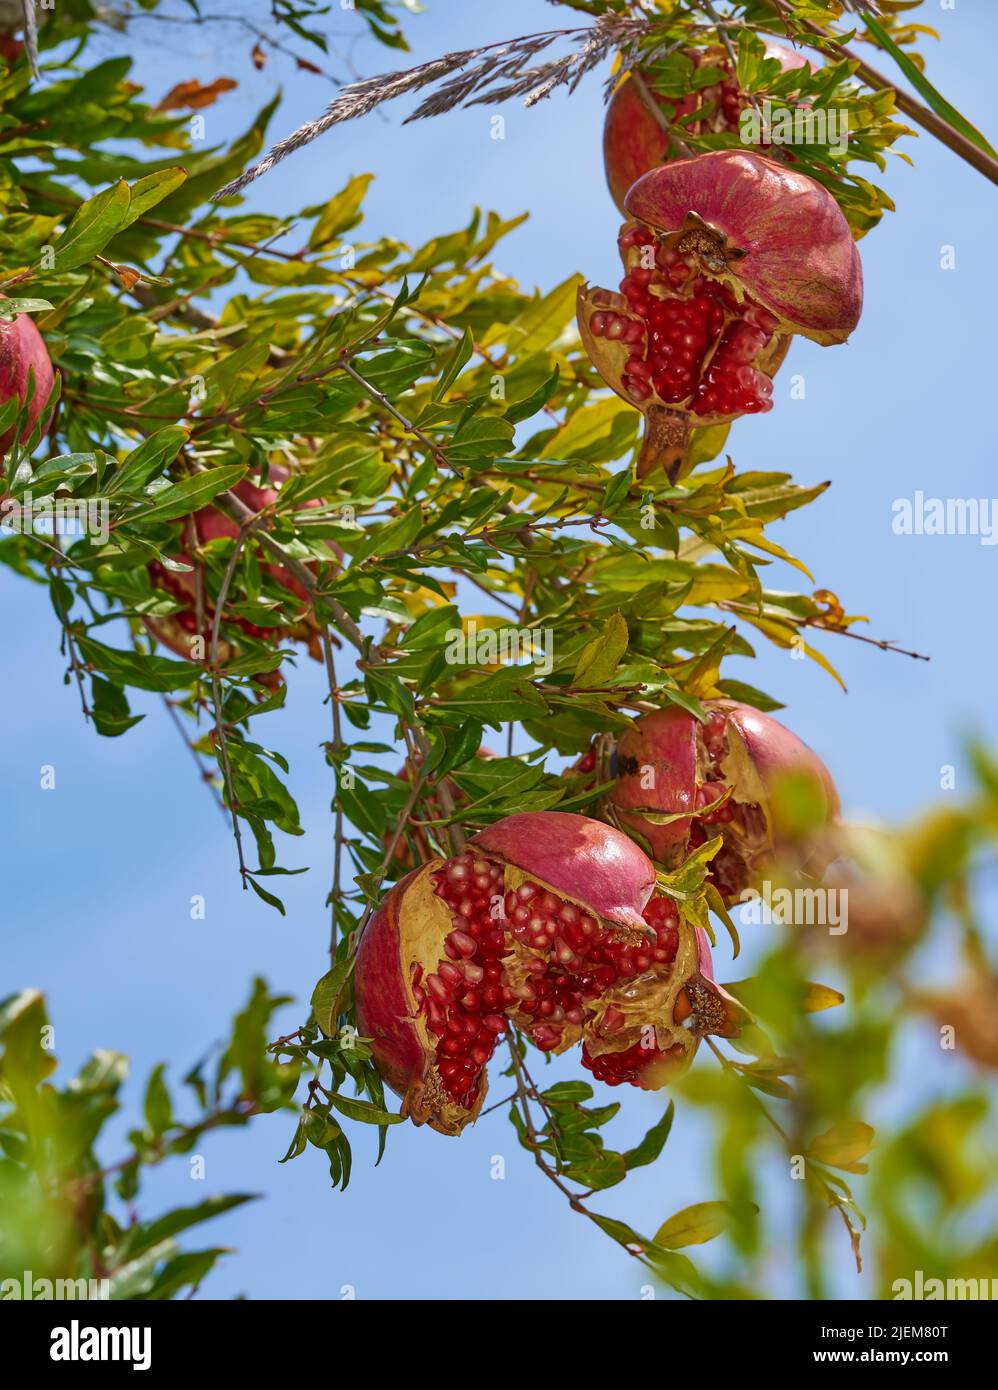 Nahaufnahme eines reifen Granatapfels, der im Garten draußen am Ast hängt, während er vom blauen Himmel isoliert ist. Gruppe von frischen und gesunden Früchten wächst in der Stockfoto